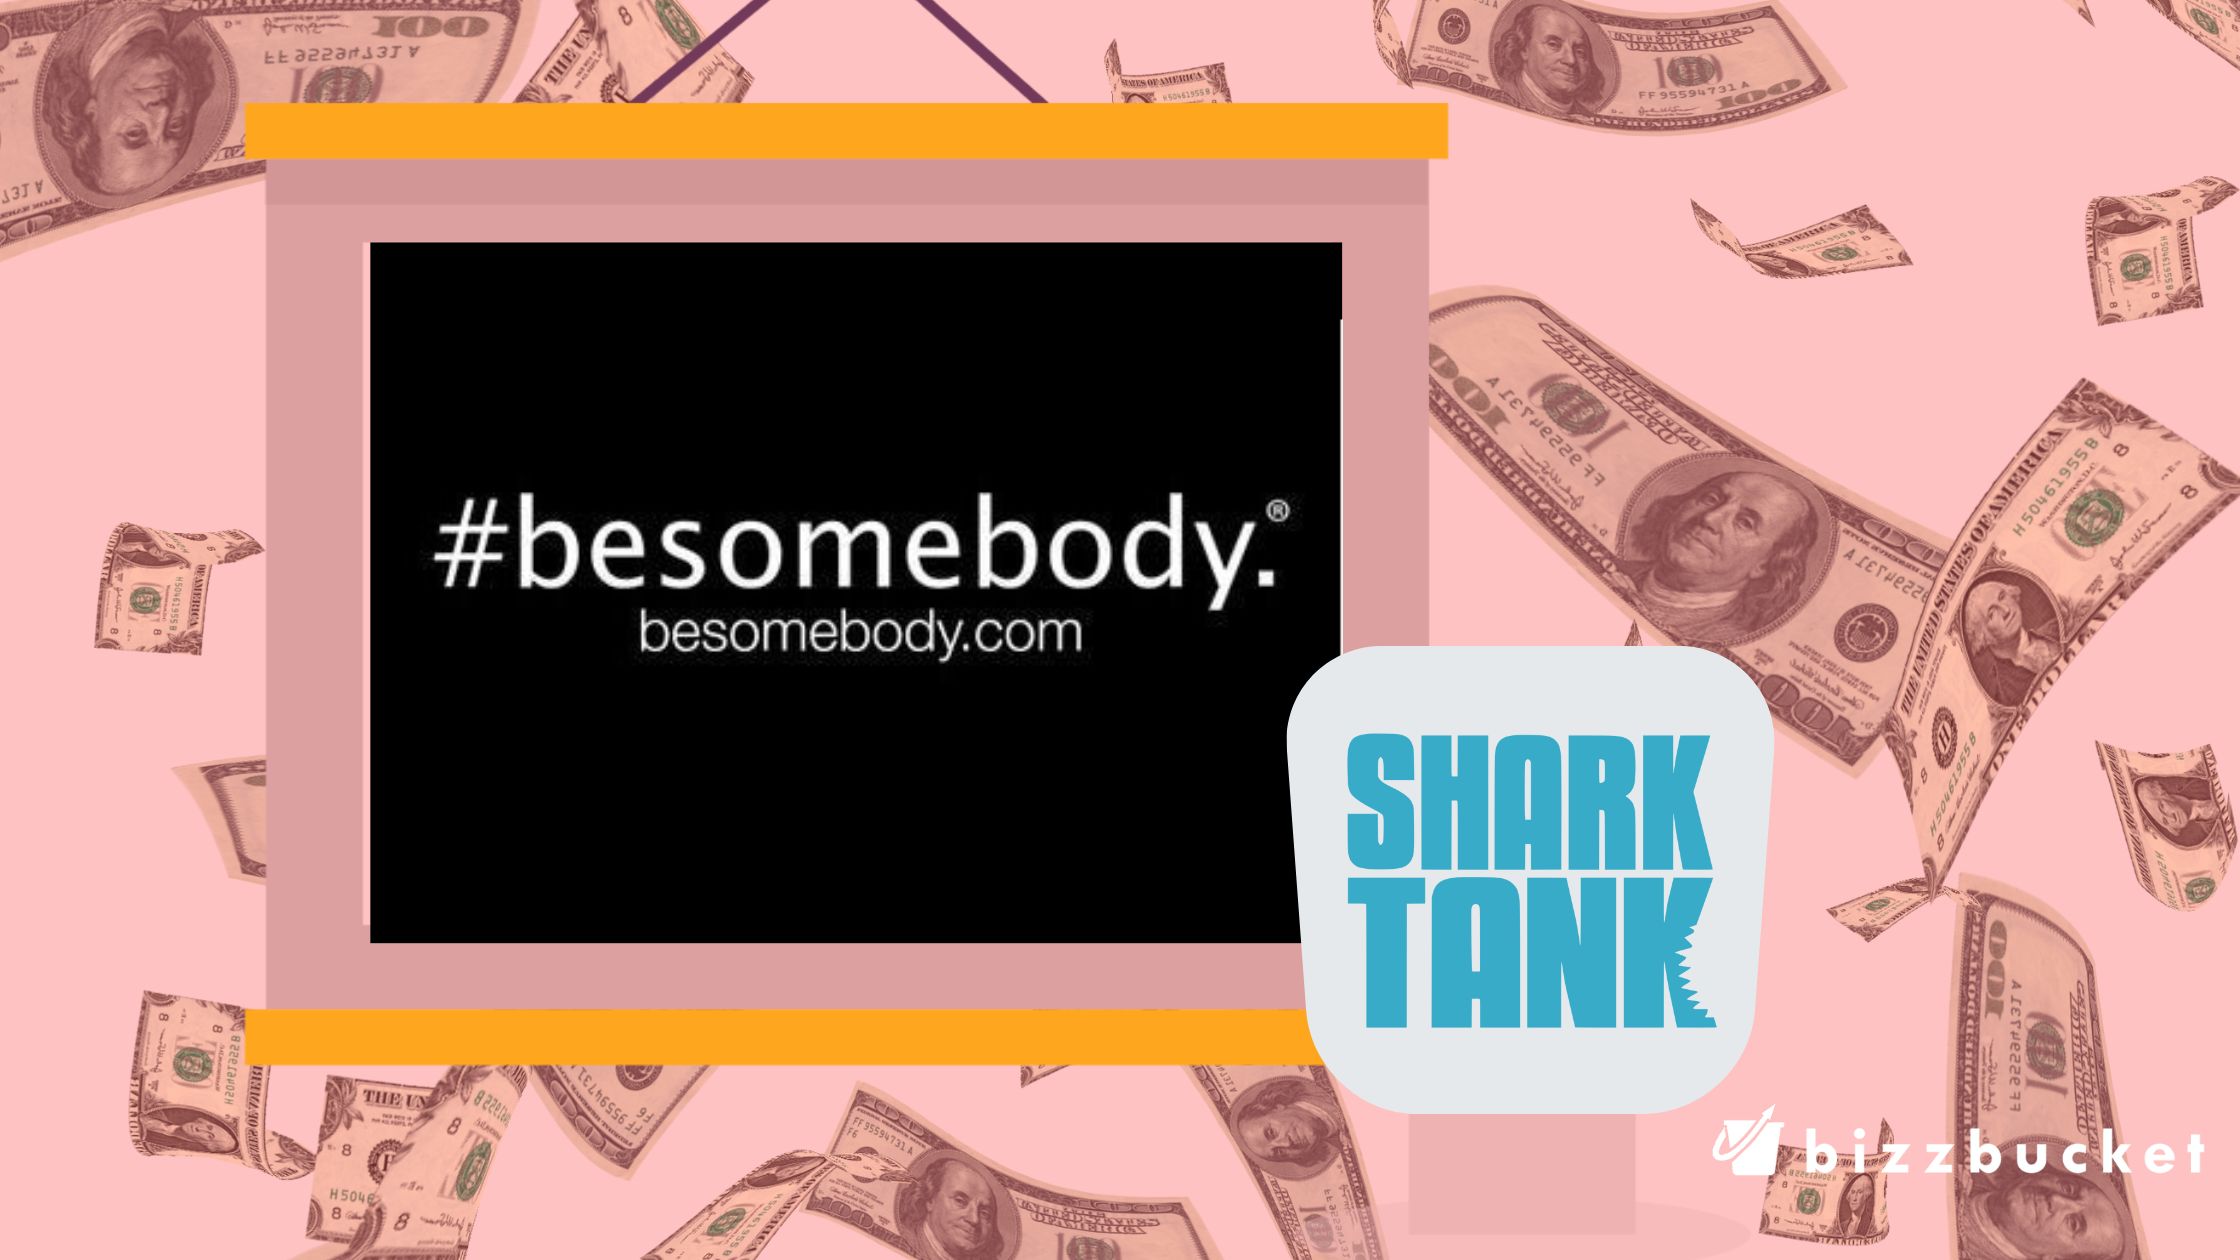 BeSomebody shark tank update